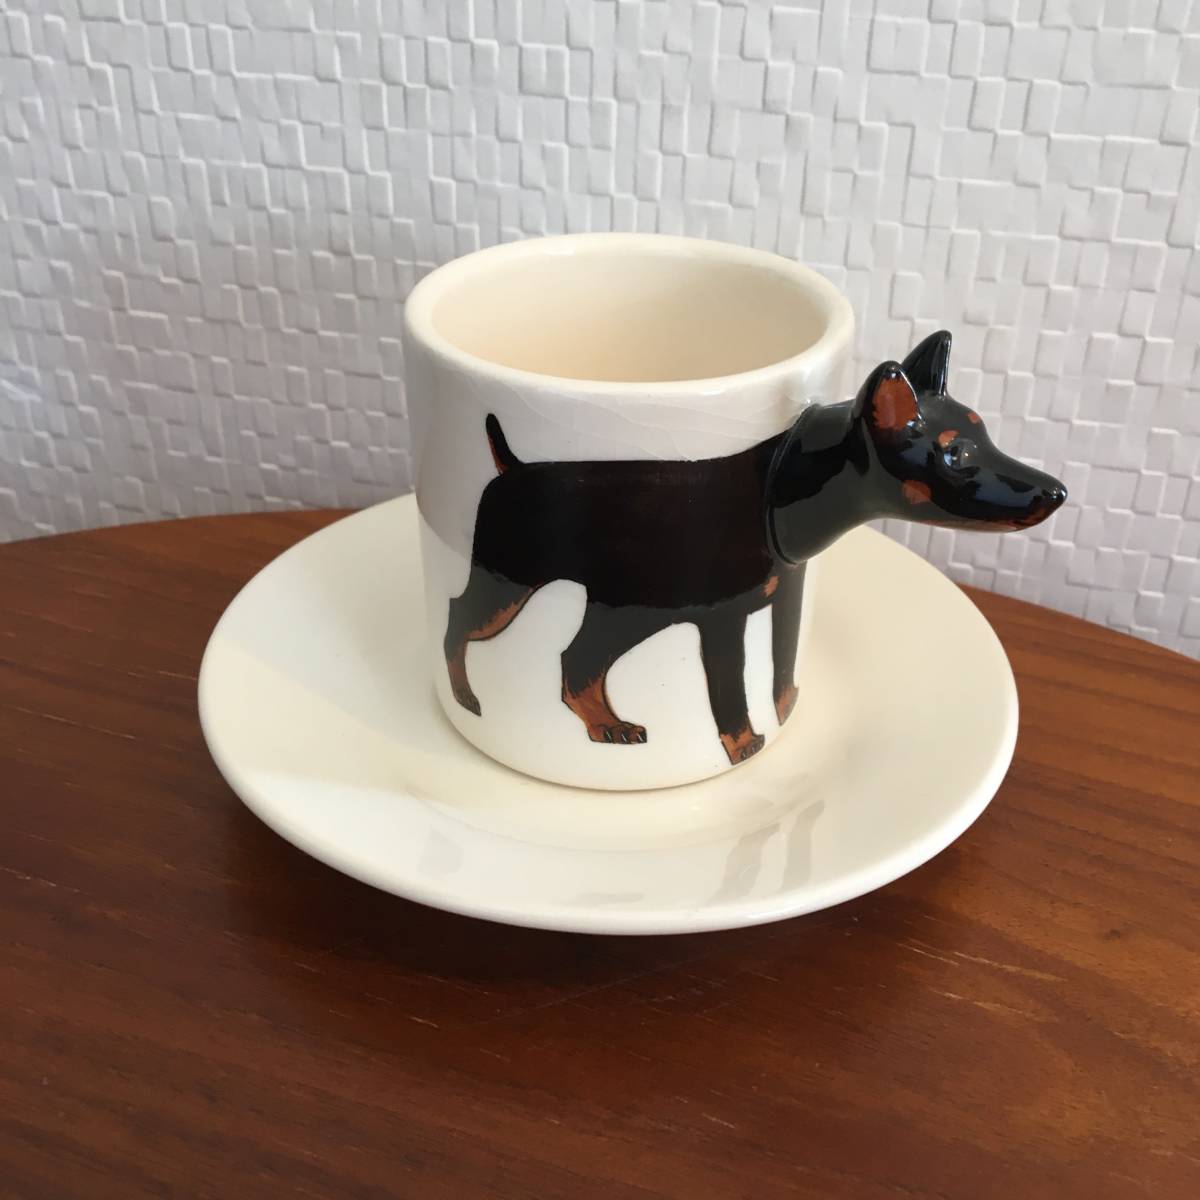 डोबर्मन | कप और तश्तरी सेट पशु 3डी 3डी संग्रह मिट्टी के बर्तन हस्तनिर्मित कुत्ता उपहार कॉफी कप एस्प्रेसो (नया) (अभी खरीदें), चाय के बर्तन, कप और तश्तरी, कफ़ि की प्याली